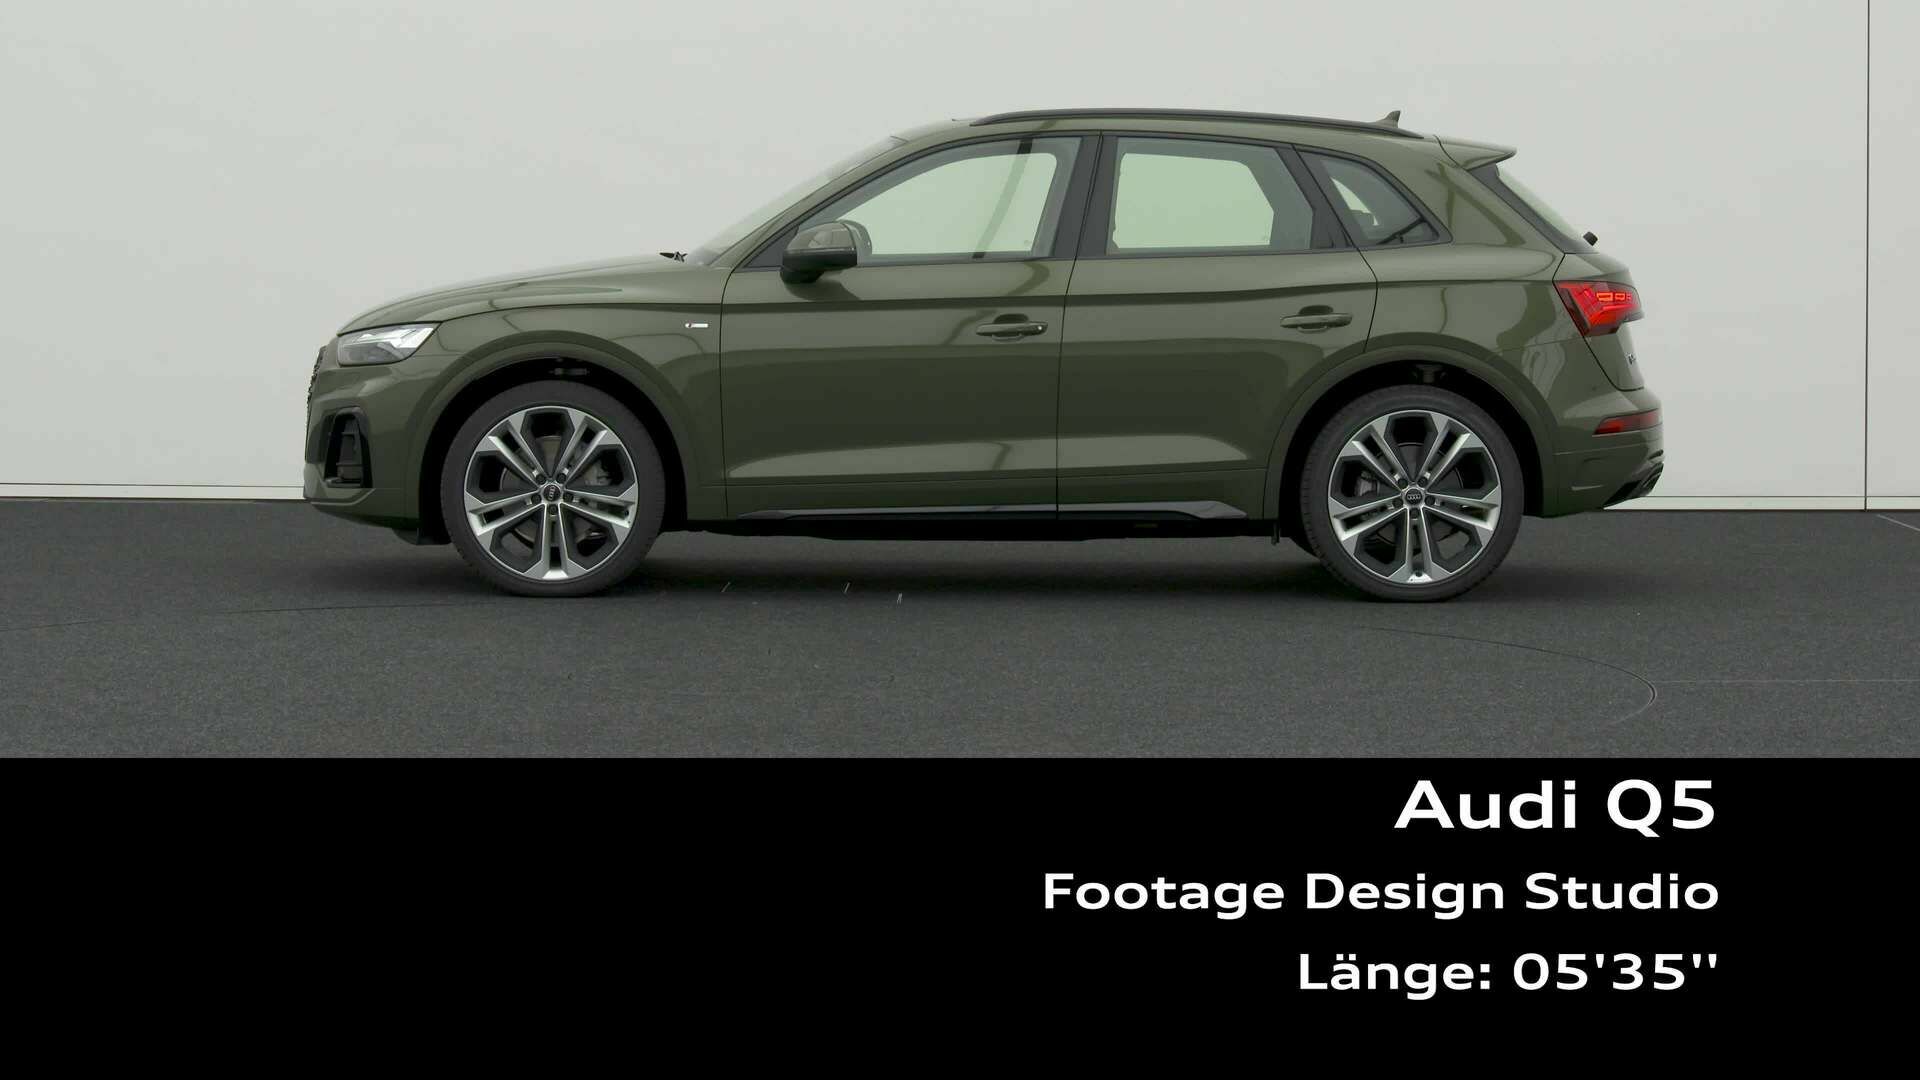 Footage: Audi Q5 Design Studio